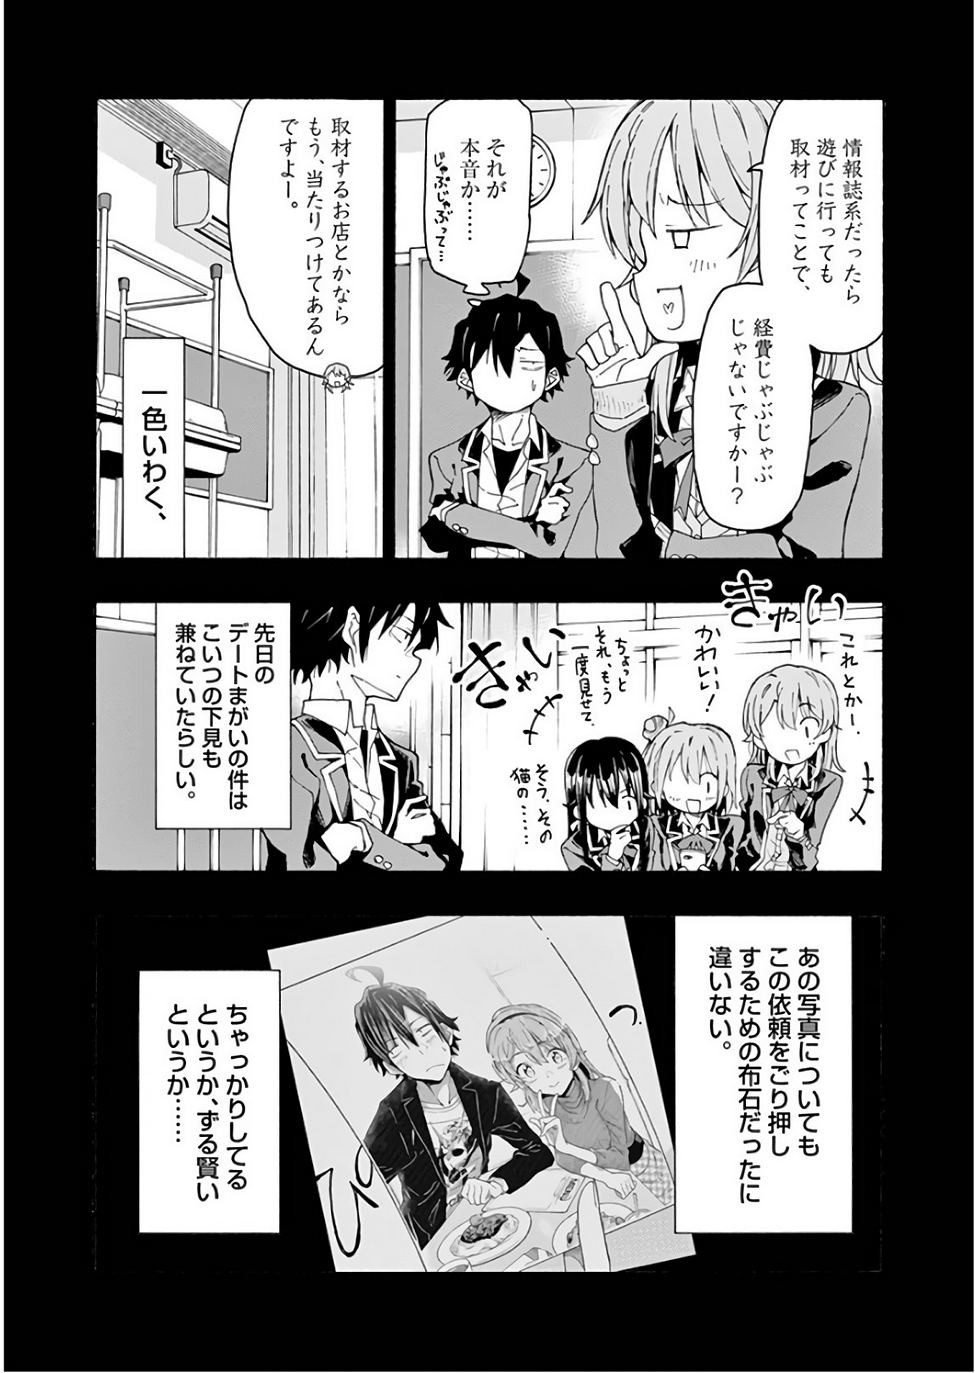 Yahari Ore no Seishun Rabukome wa Machigatte Iru. @ Comic - Chapter 72 - Page 5